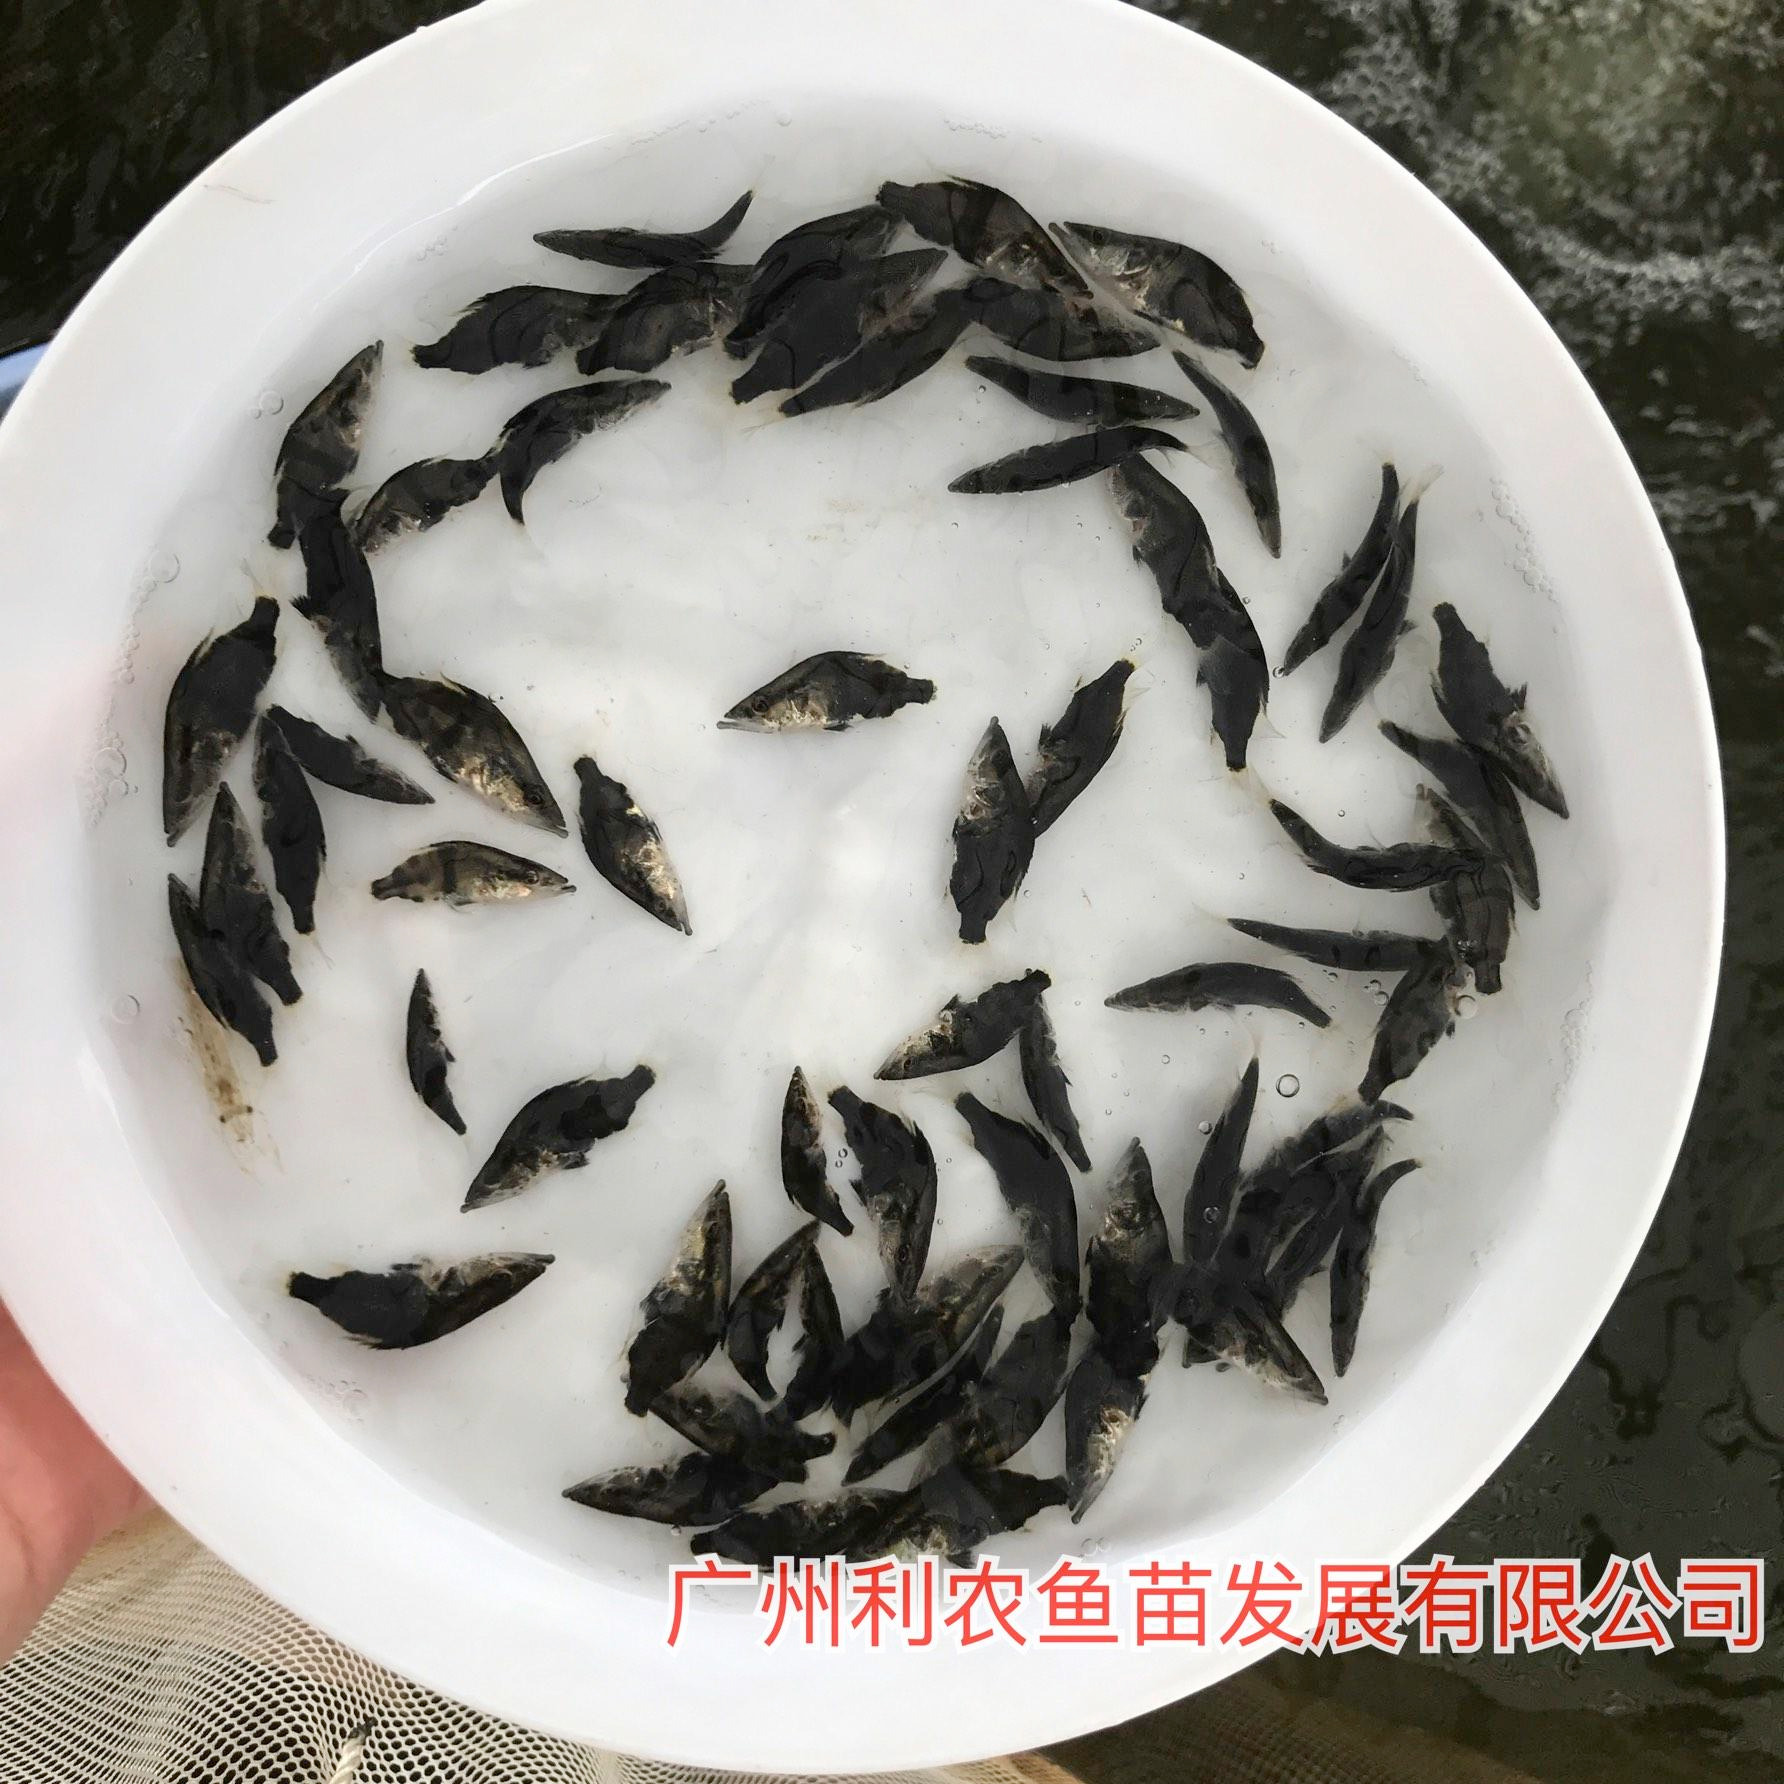 养殖支持 广东中山桂花鱼苗出售 4-5cm快大品种优选鳜鱼苗